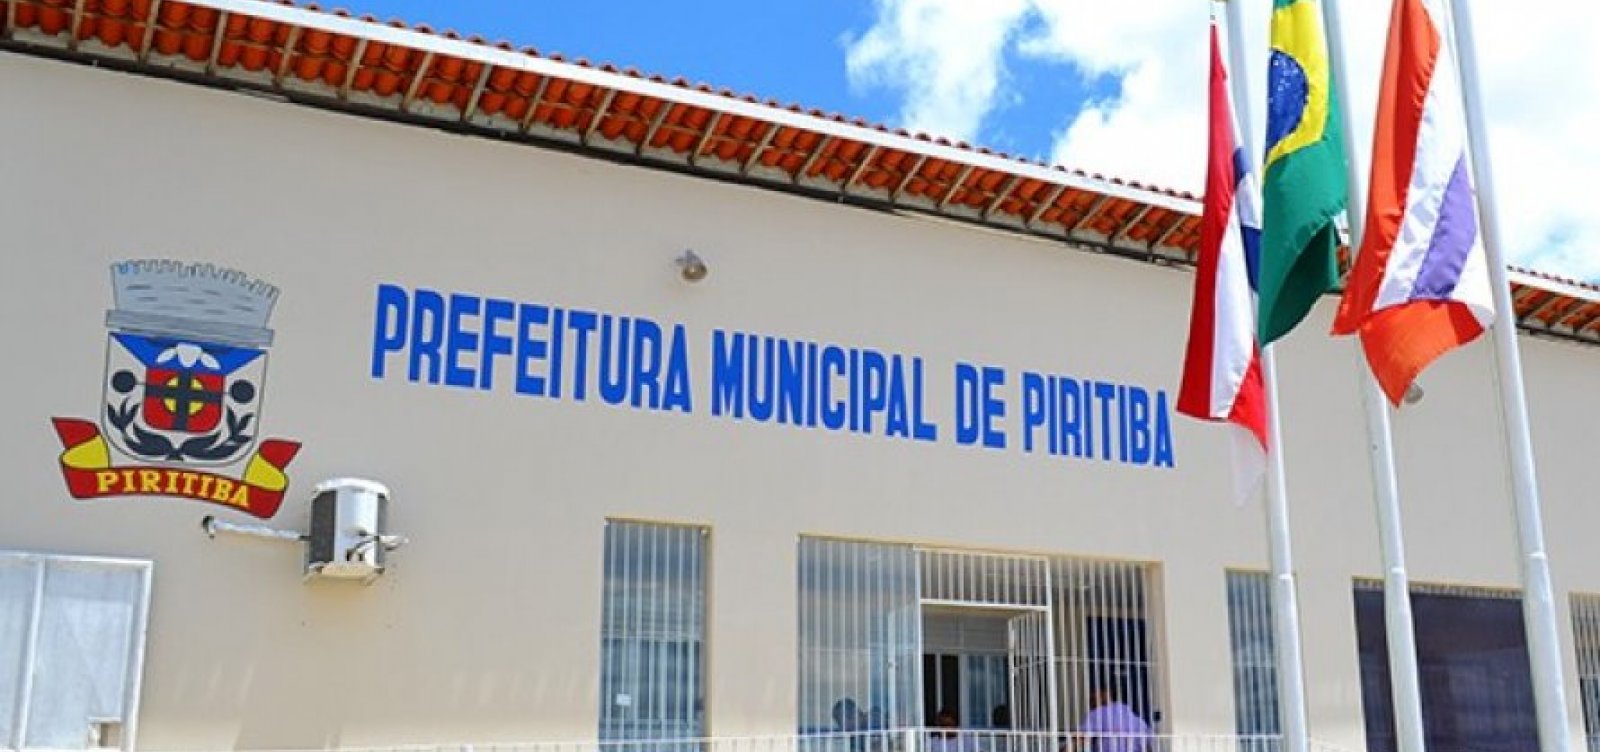 Concurso Municipal na Bahia: inscrições até 25/04!